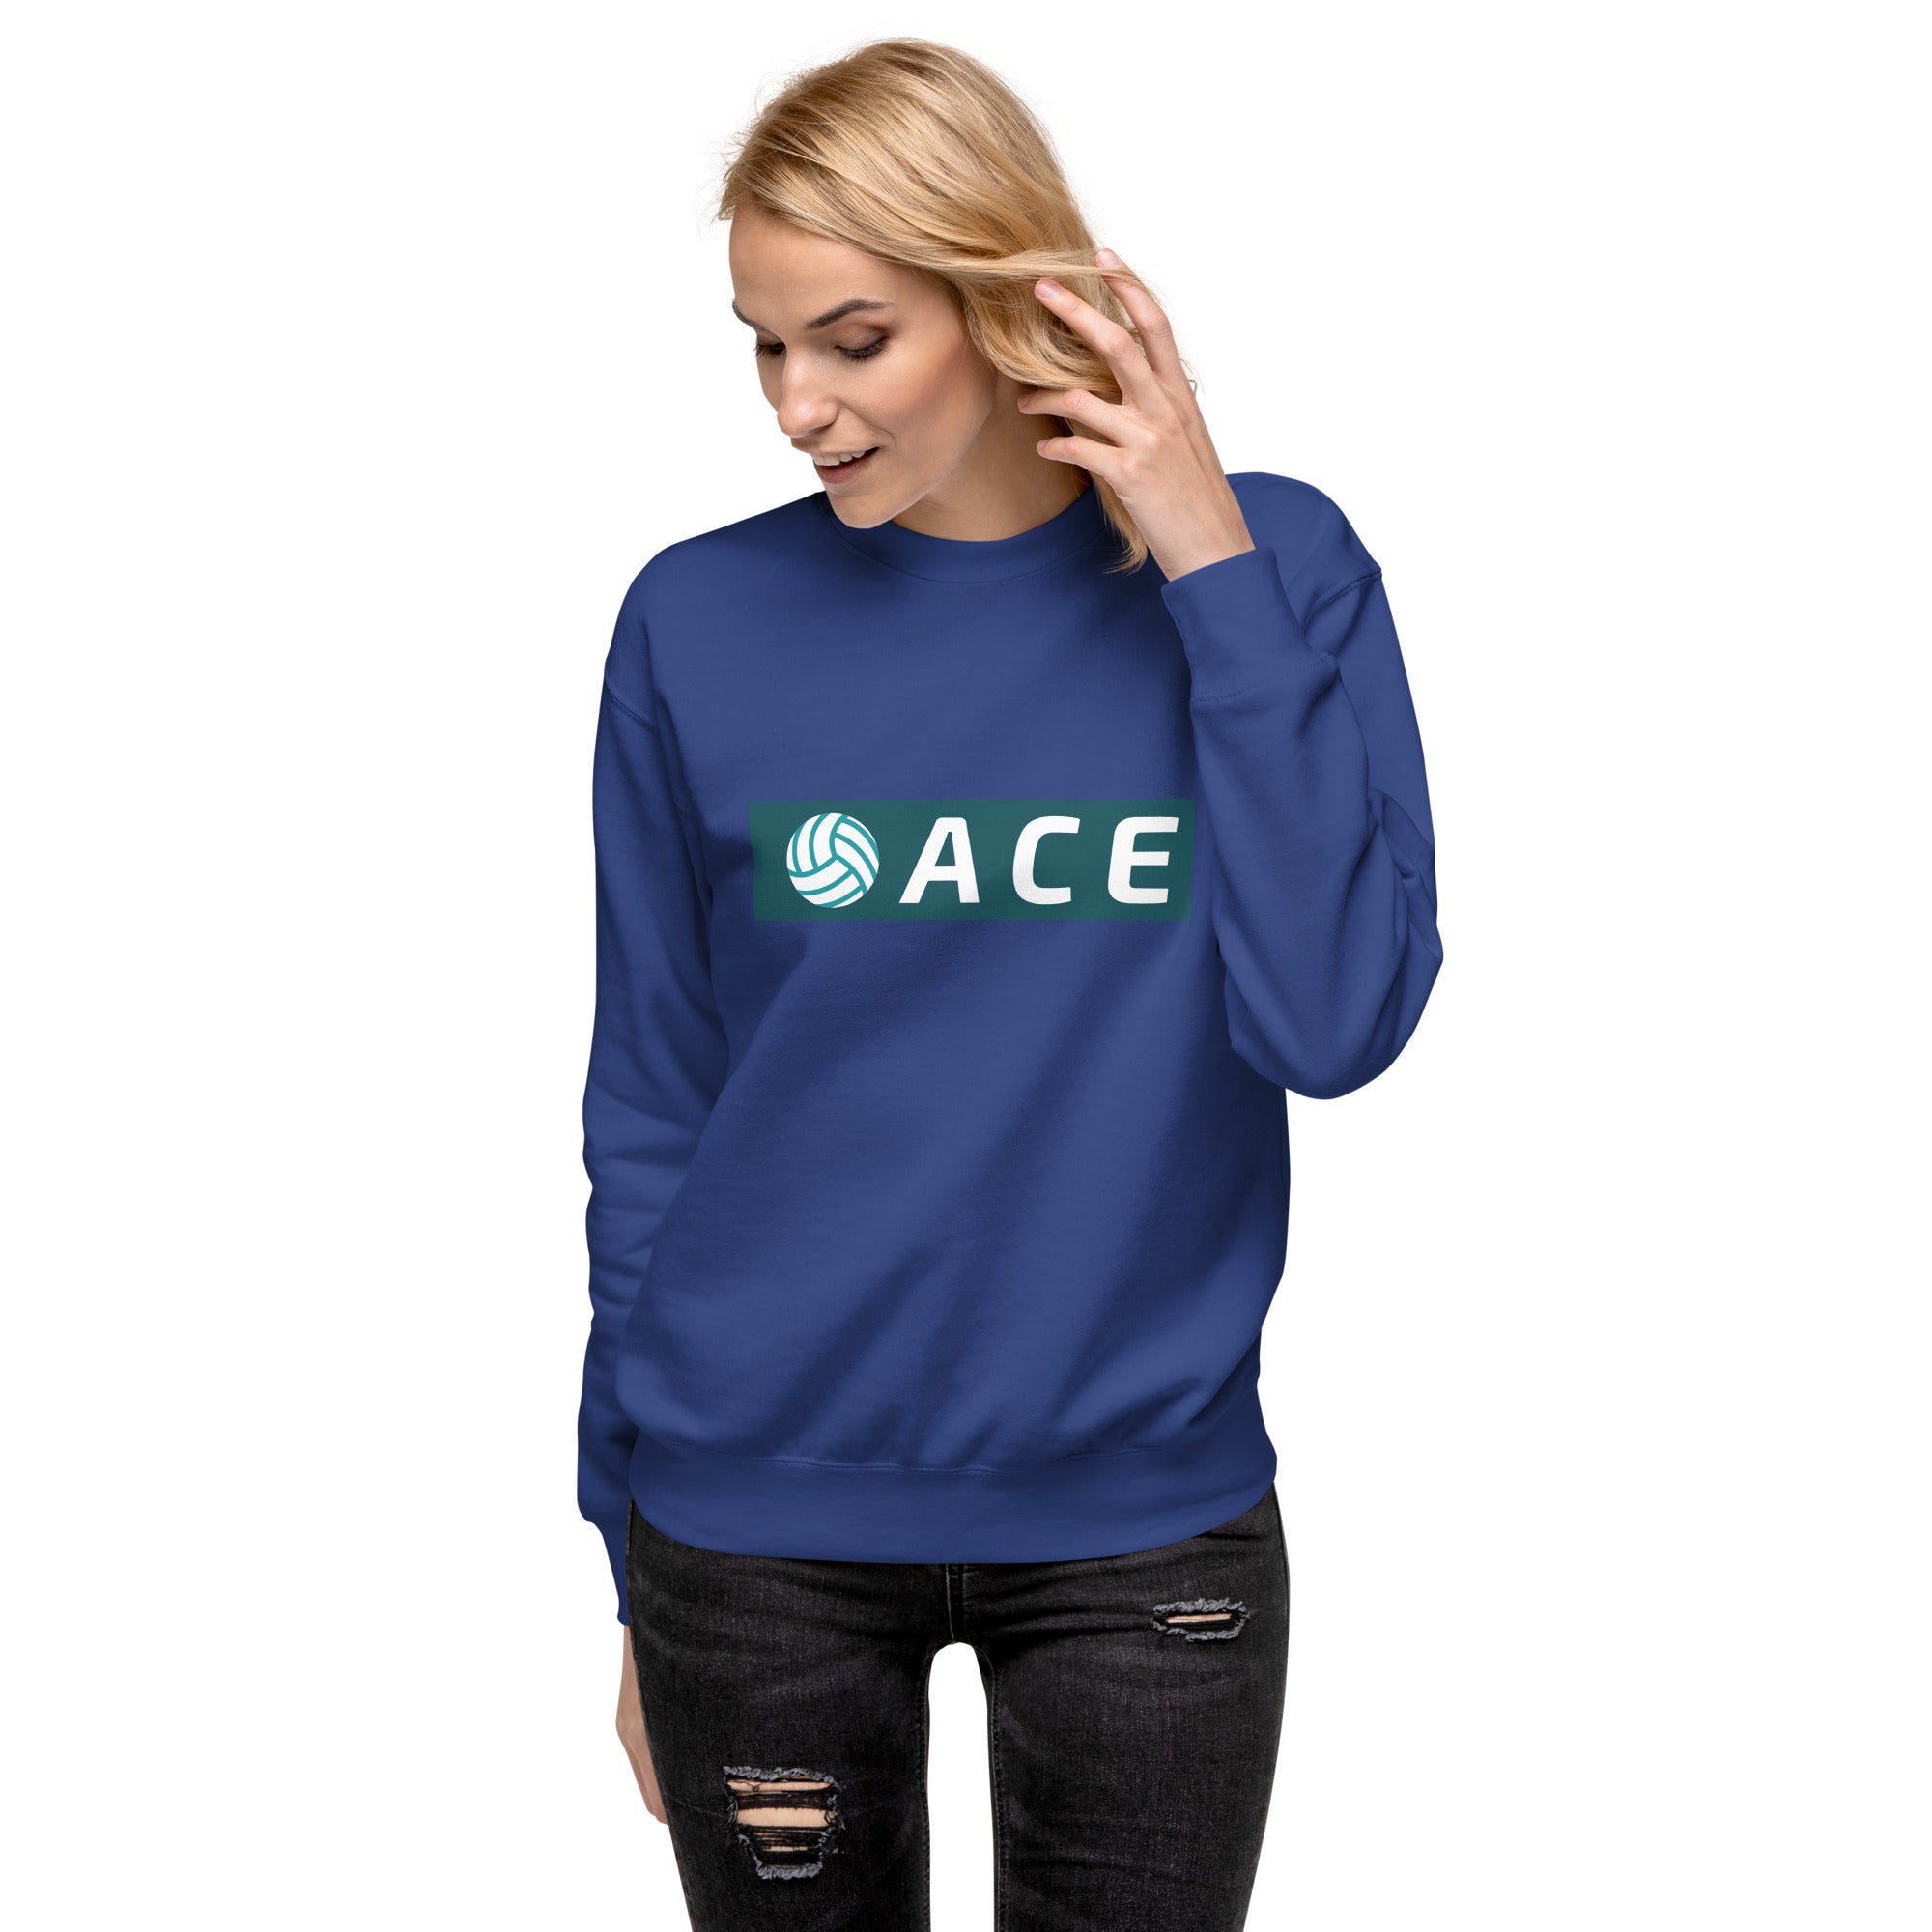 Ace Women's Premium Sweatshirt